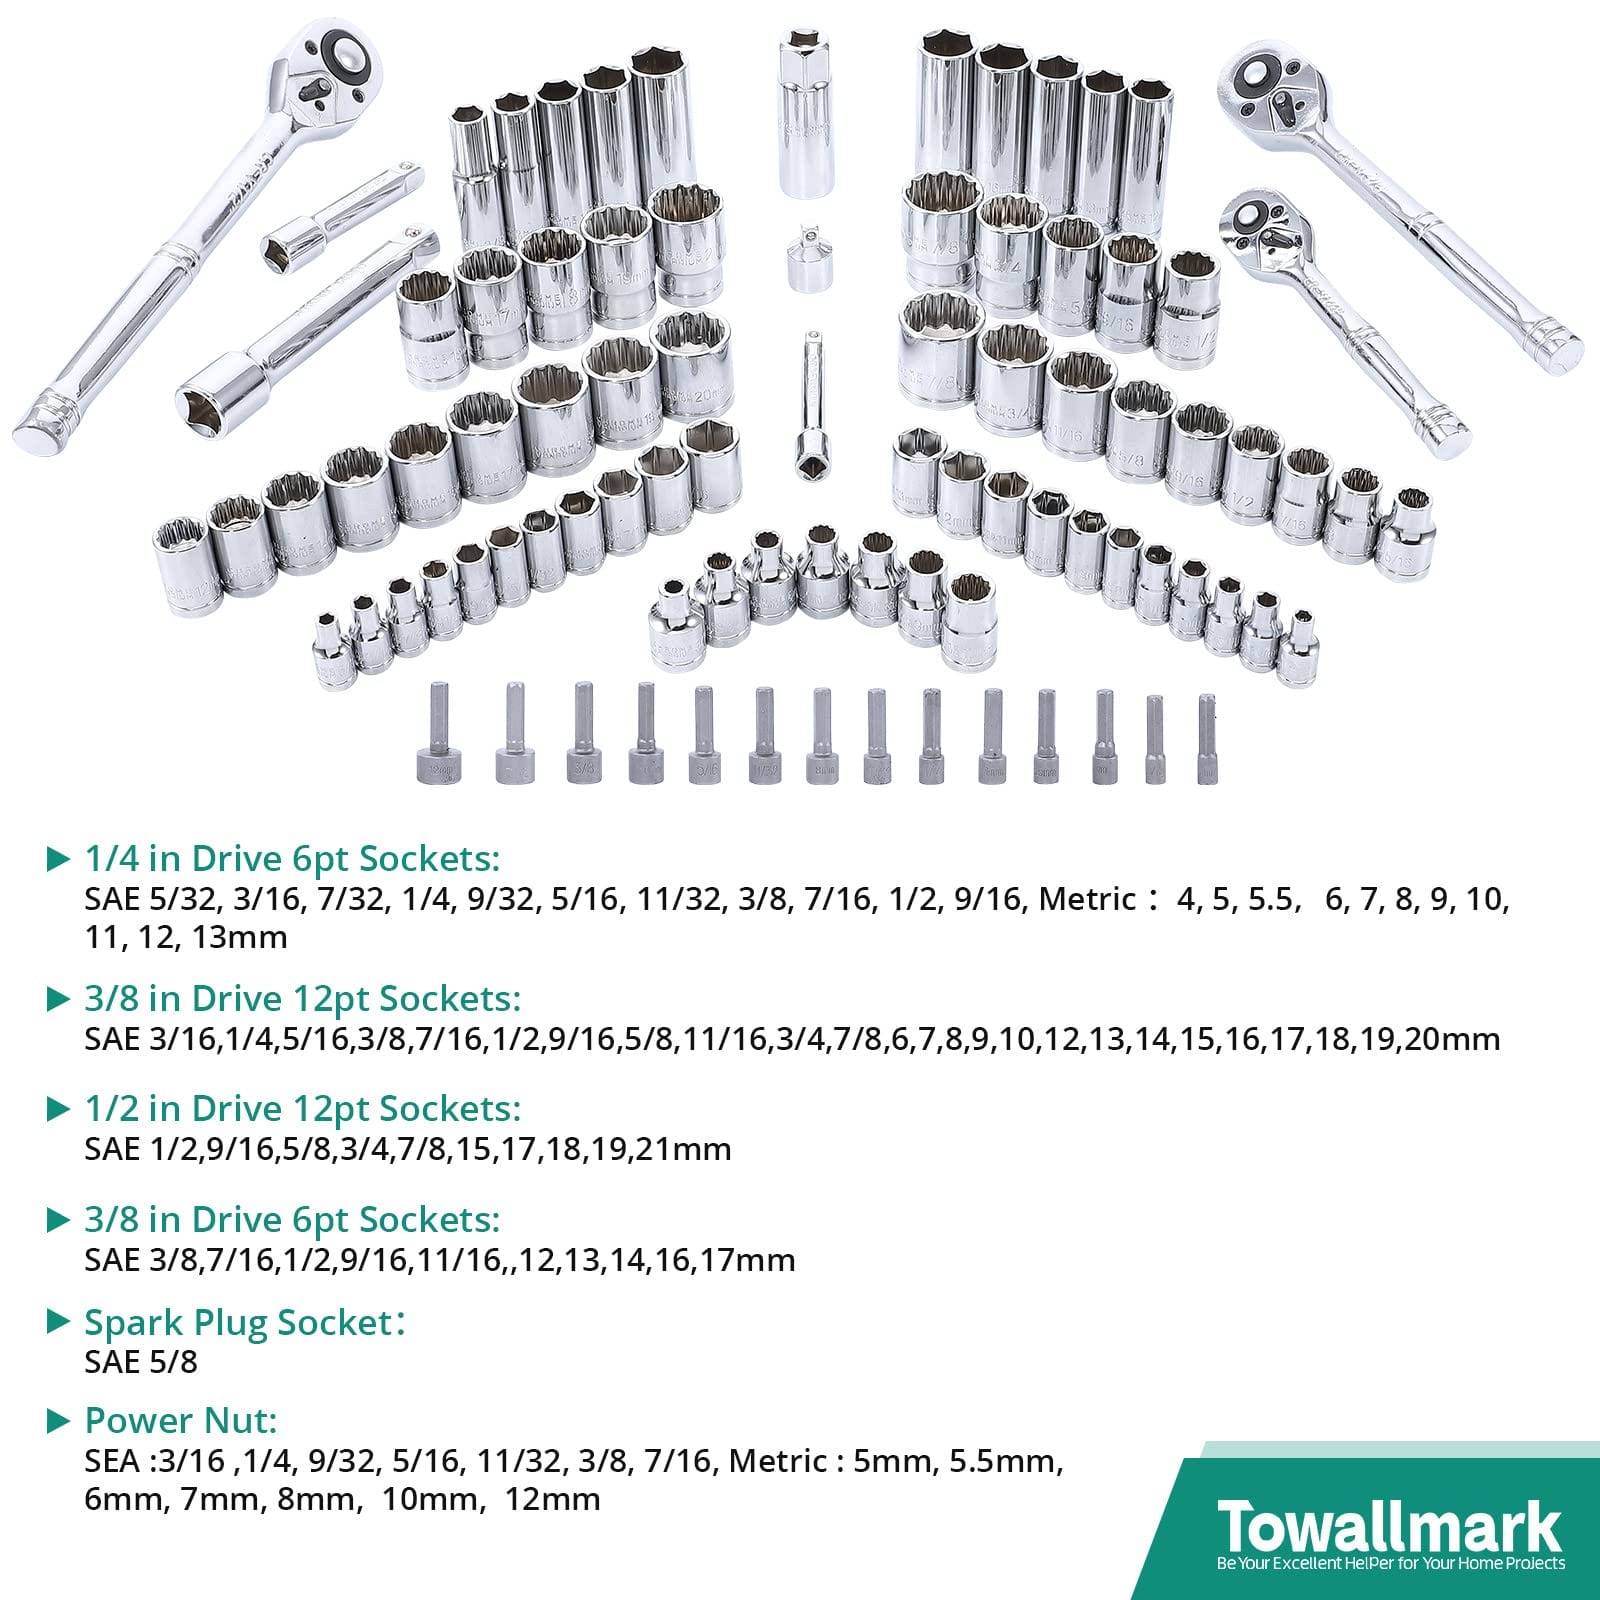 213-Pc Mechanic Tool Set, SAE/Metric for Auto & Home Repair